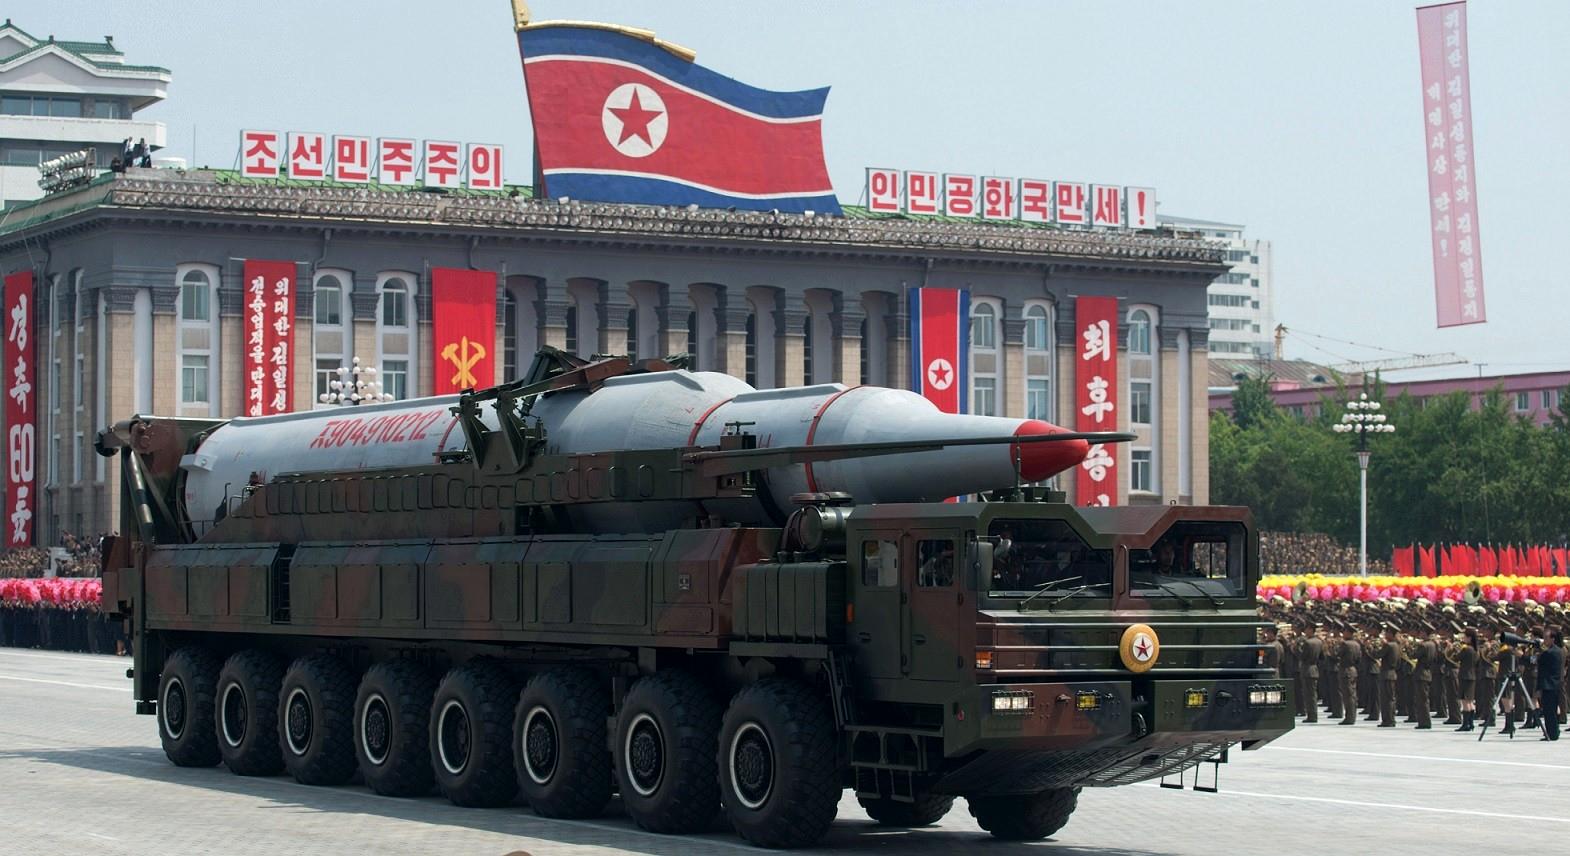 کره شمالی سئول را تهدید کرد